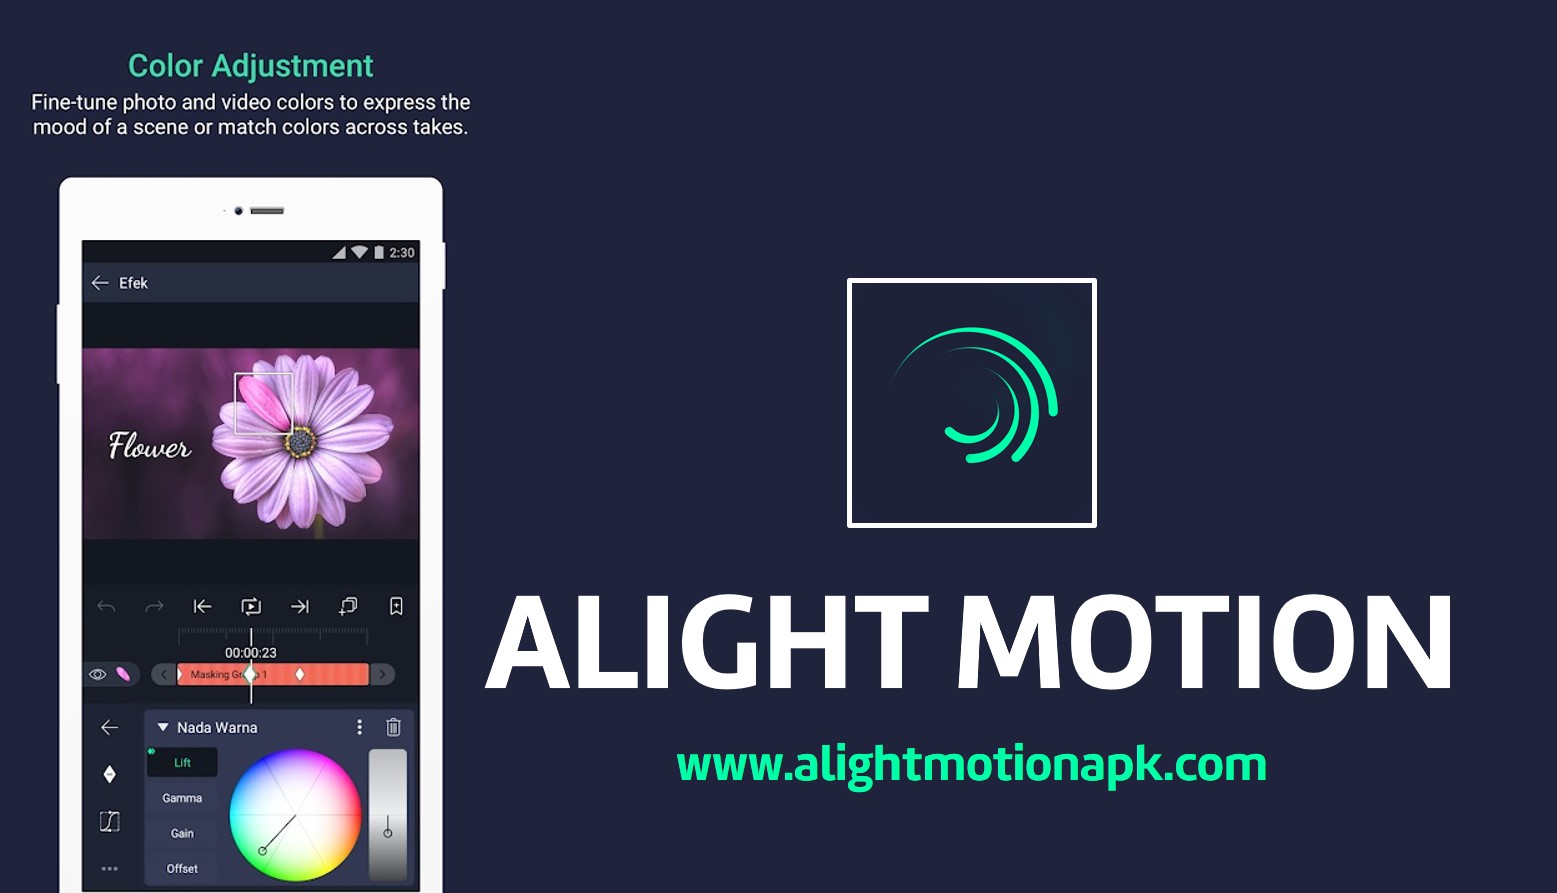 alight motion app download